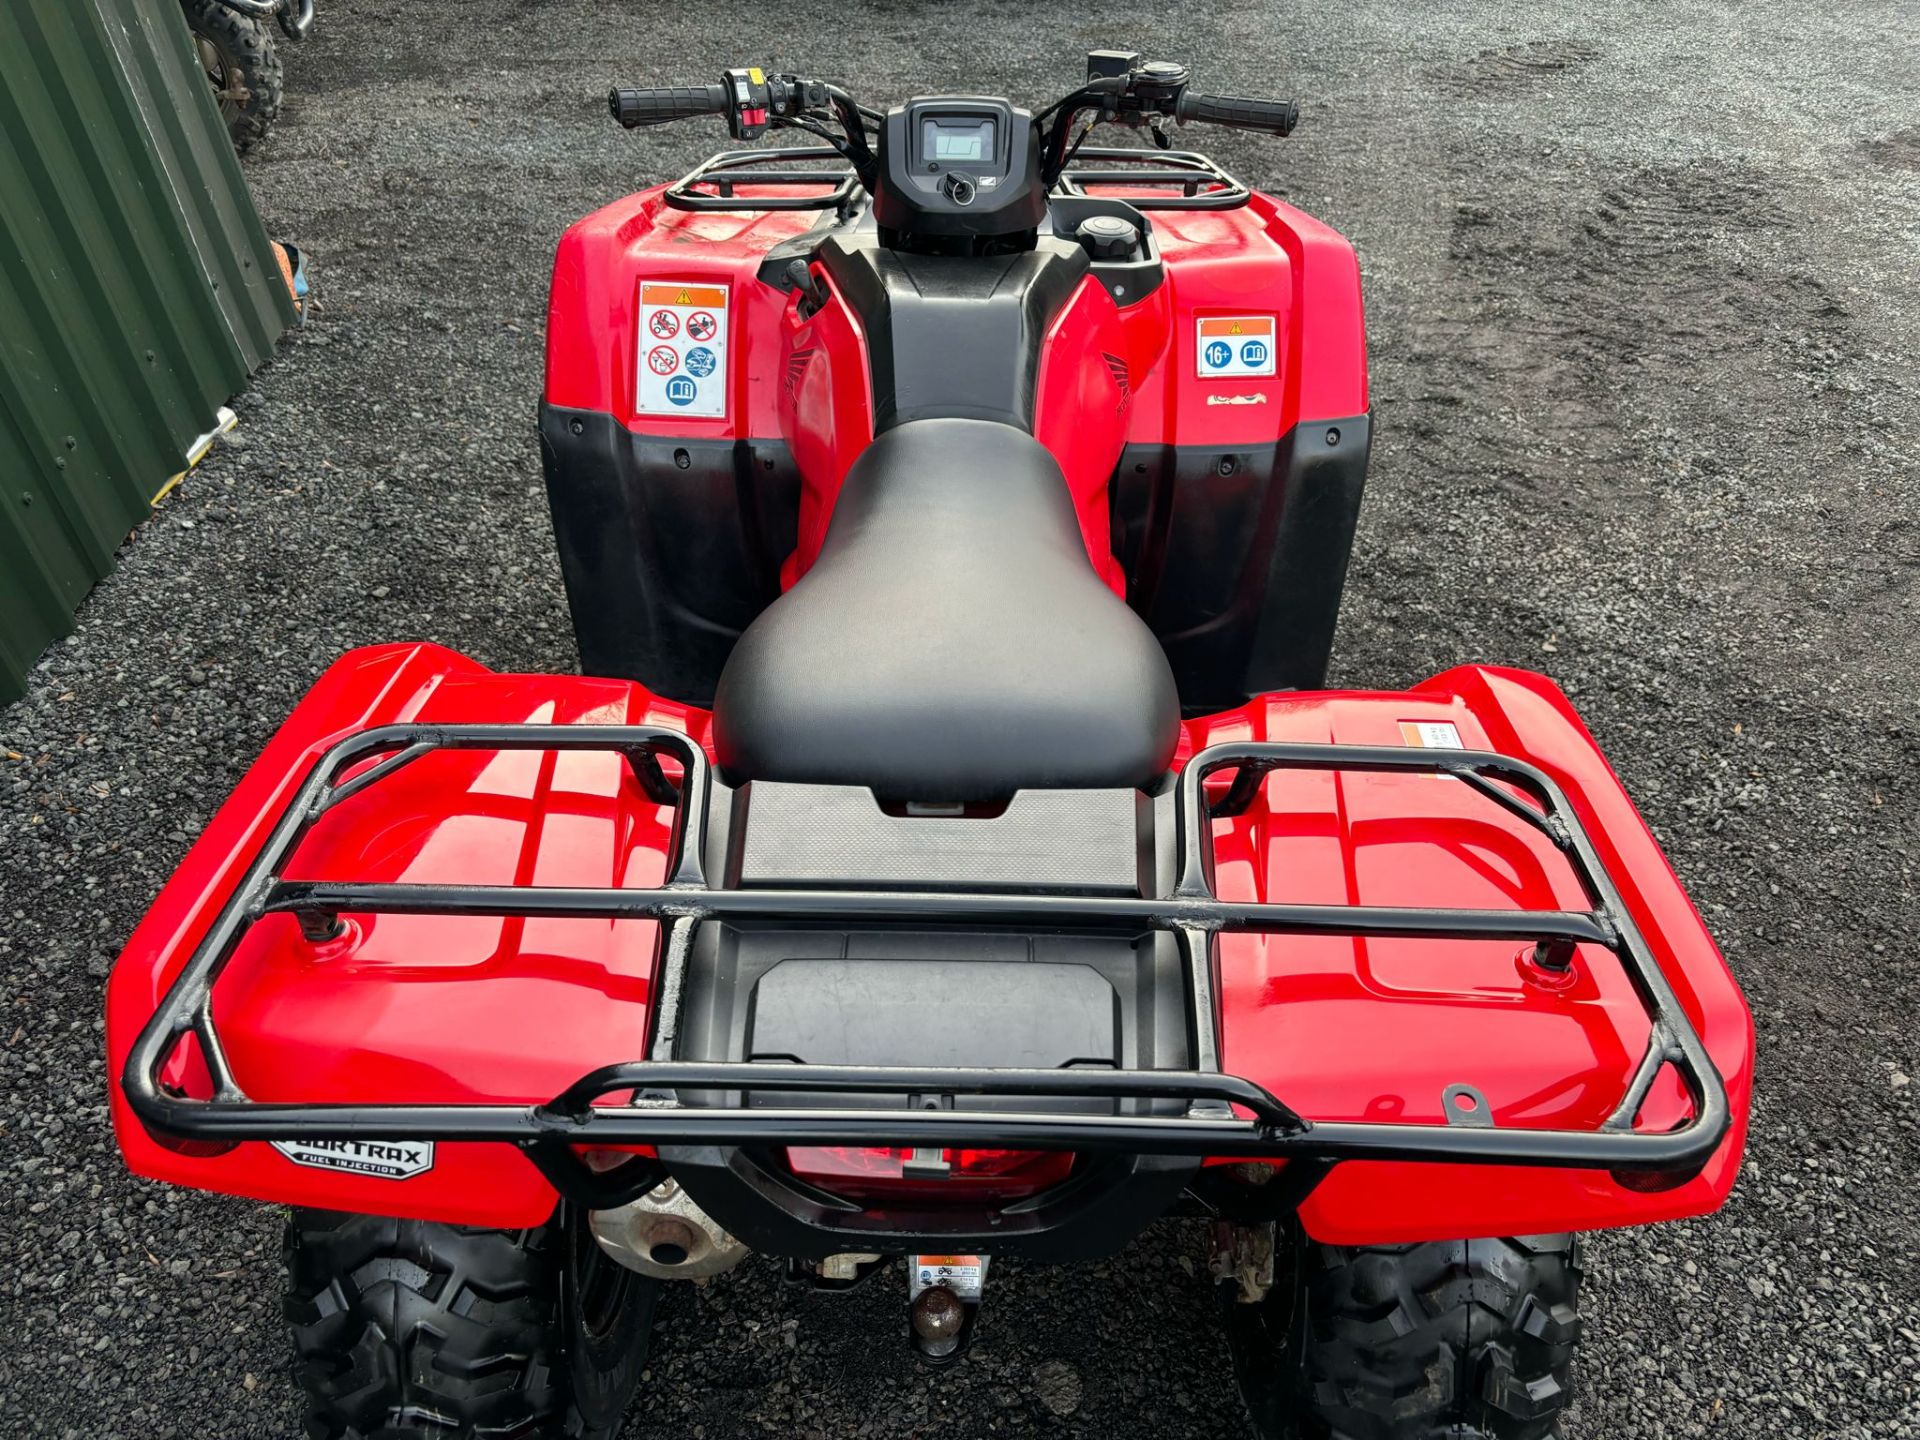 2019 ROAD REGISTERED HONDA TRX420 FARM QUAD BIKE ATV FOURTRAX TRX 420FM 4X4 4WD - Image 6 of 11